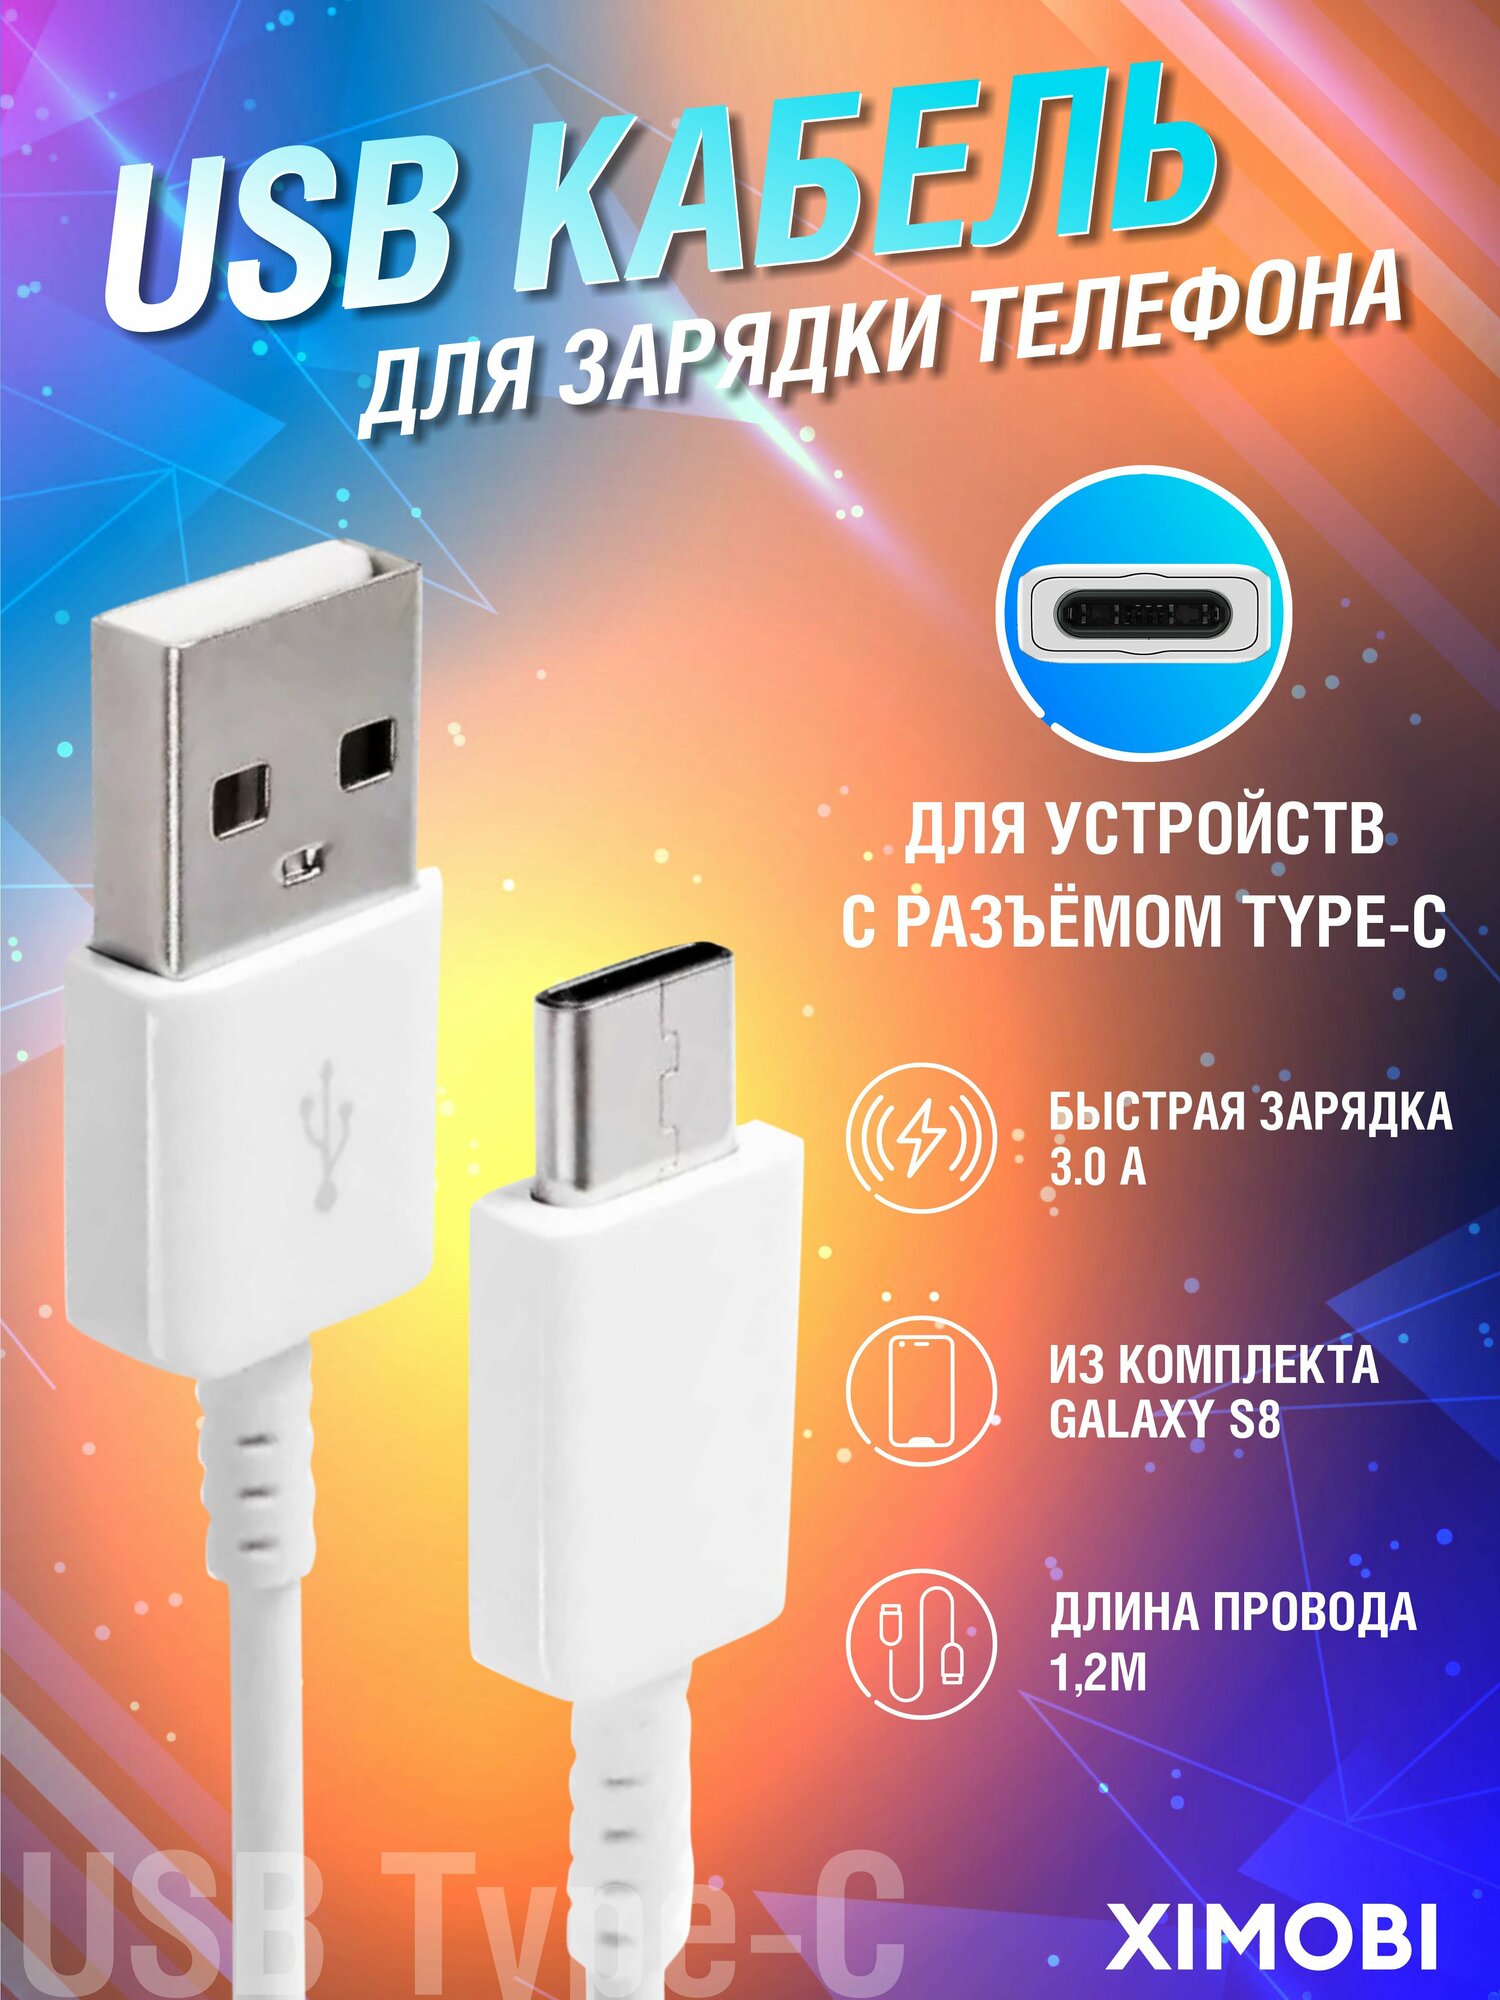 Кабель USB Type-C для быстрой зарядки телефона